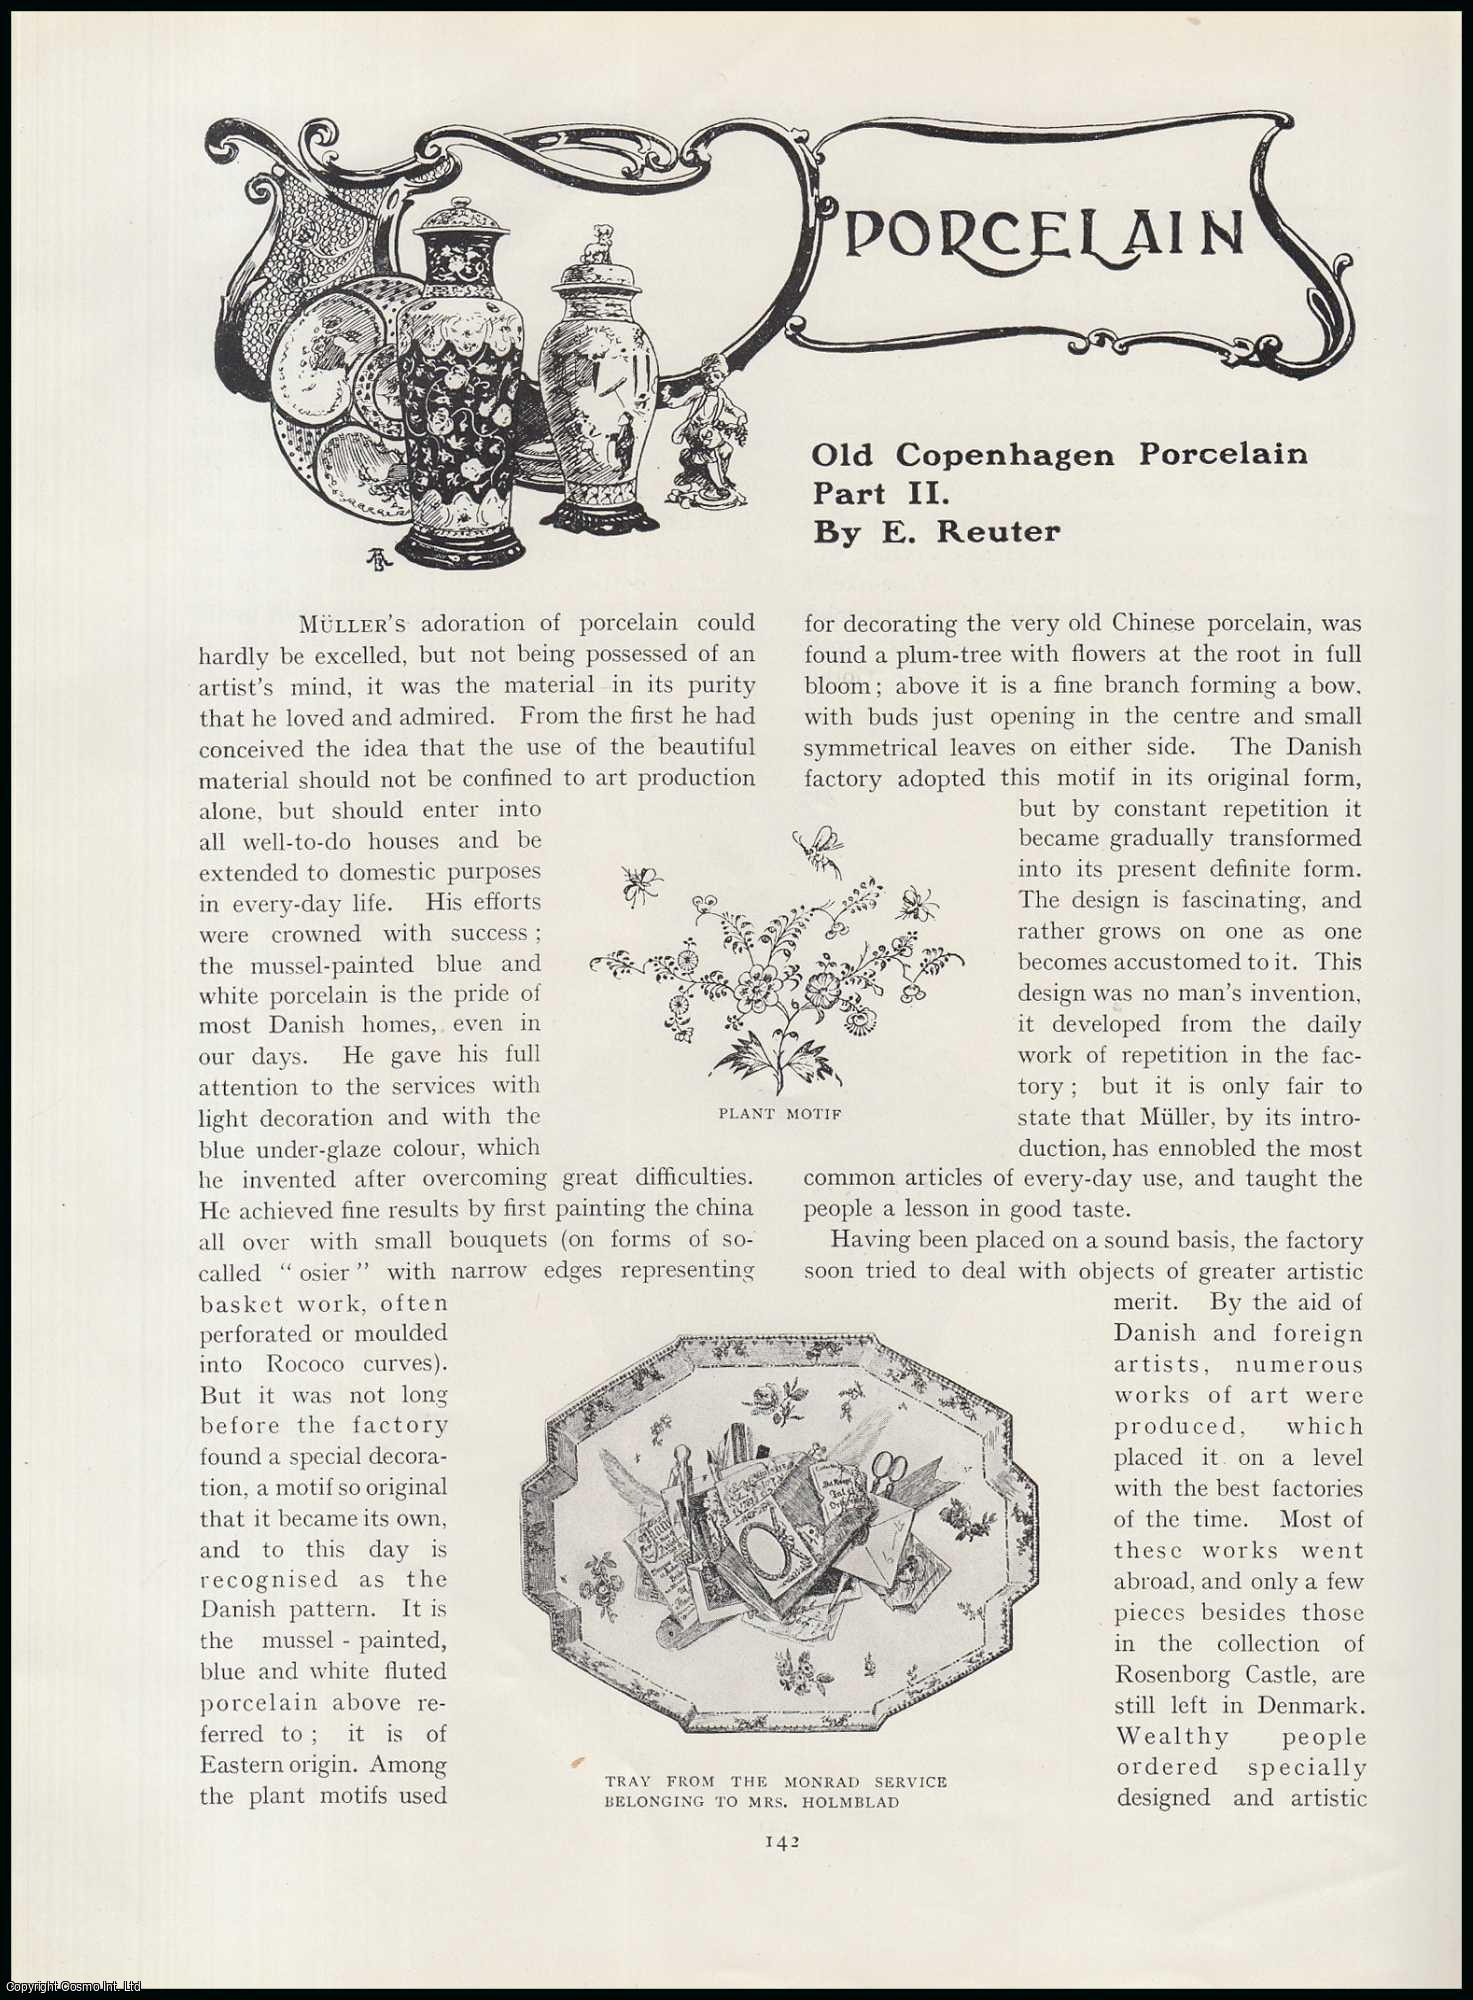 E. Reuter - Old Copenhagen Porcelain (part 2). An original article from The Connoisseur, 1905.